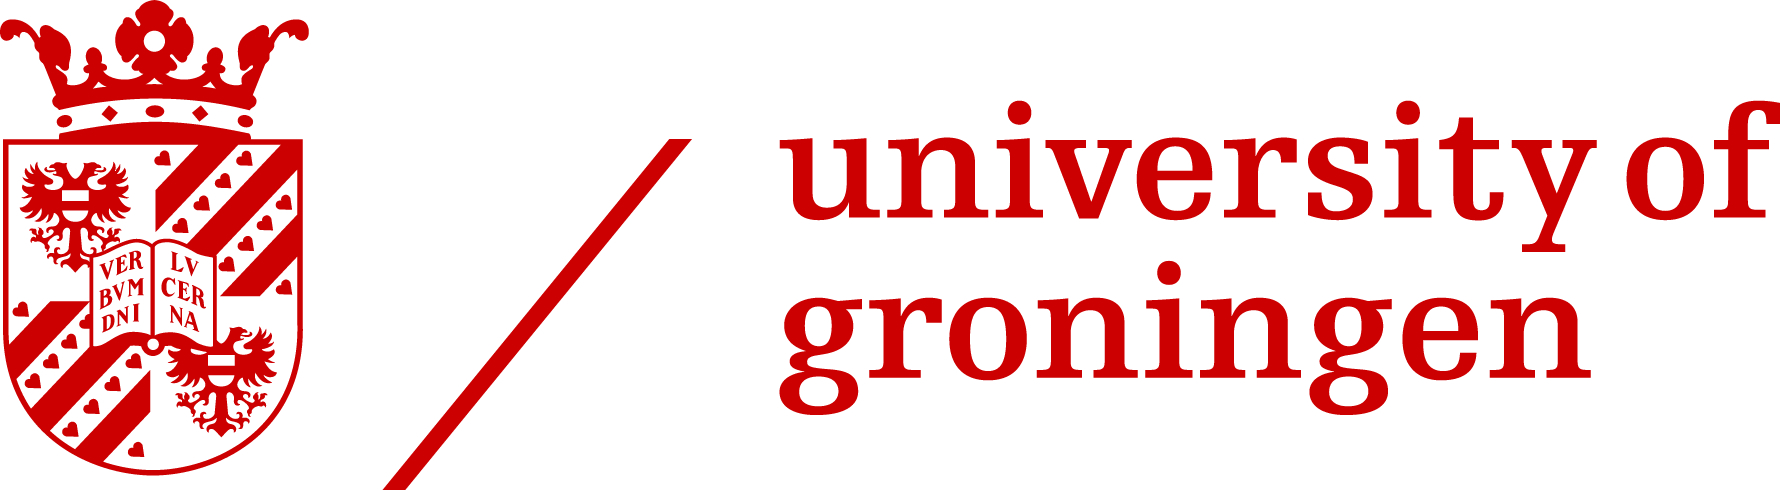 University of Groningen marque